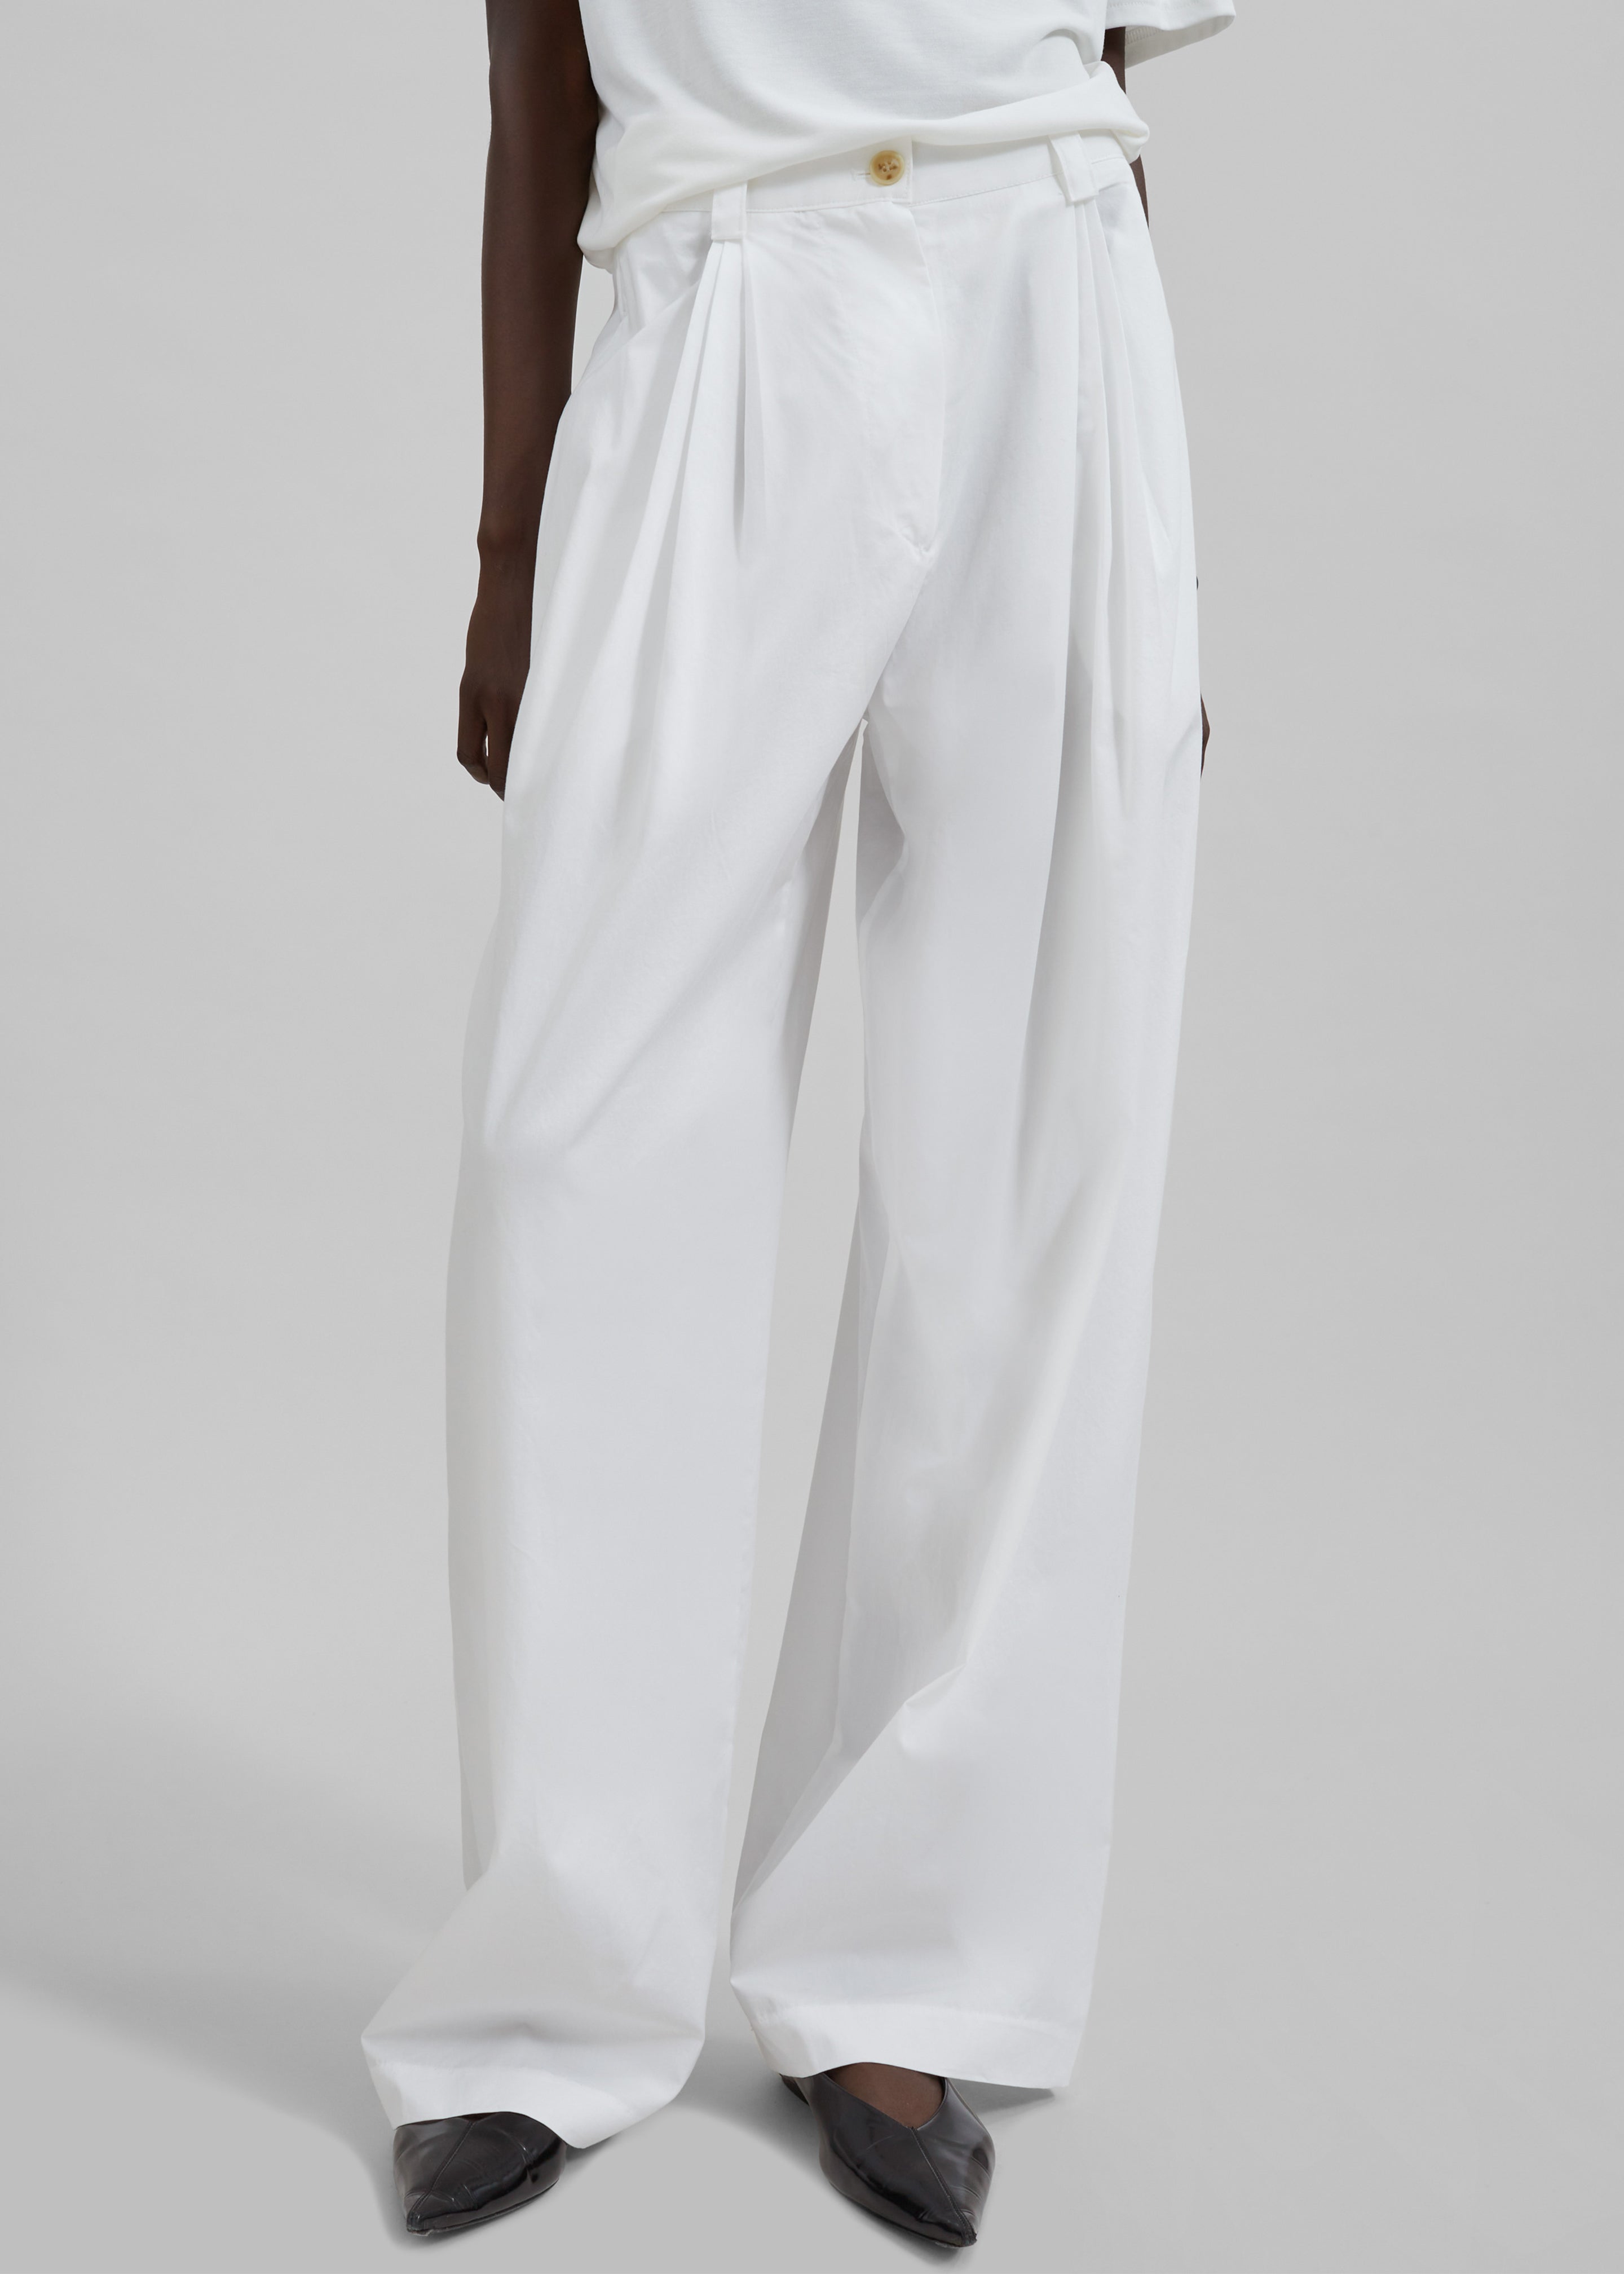 Lea Cotton Trousers - White - 6